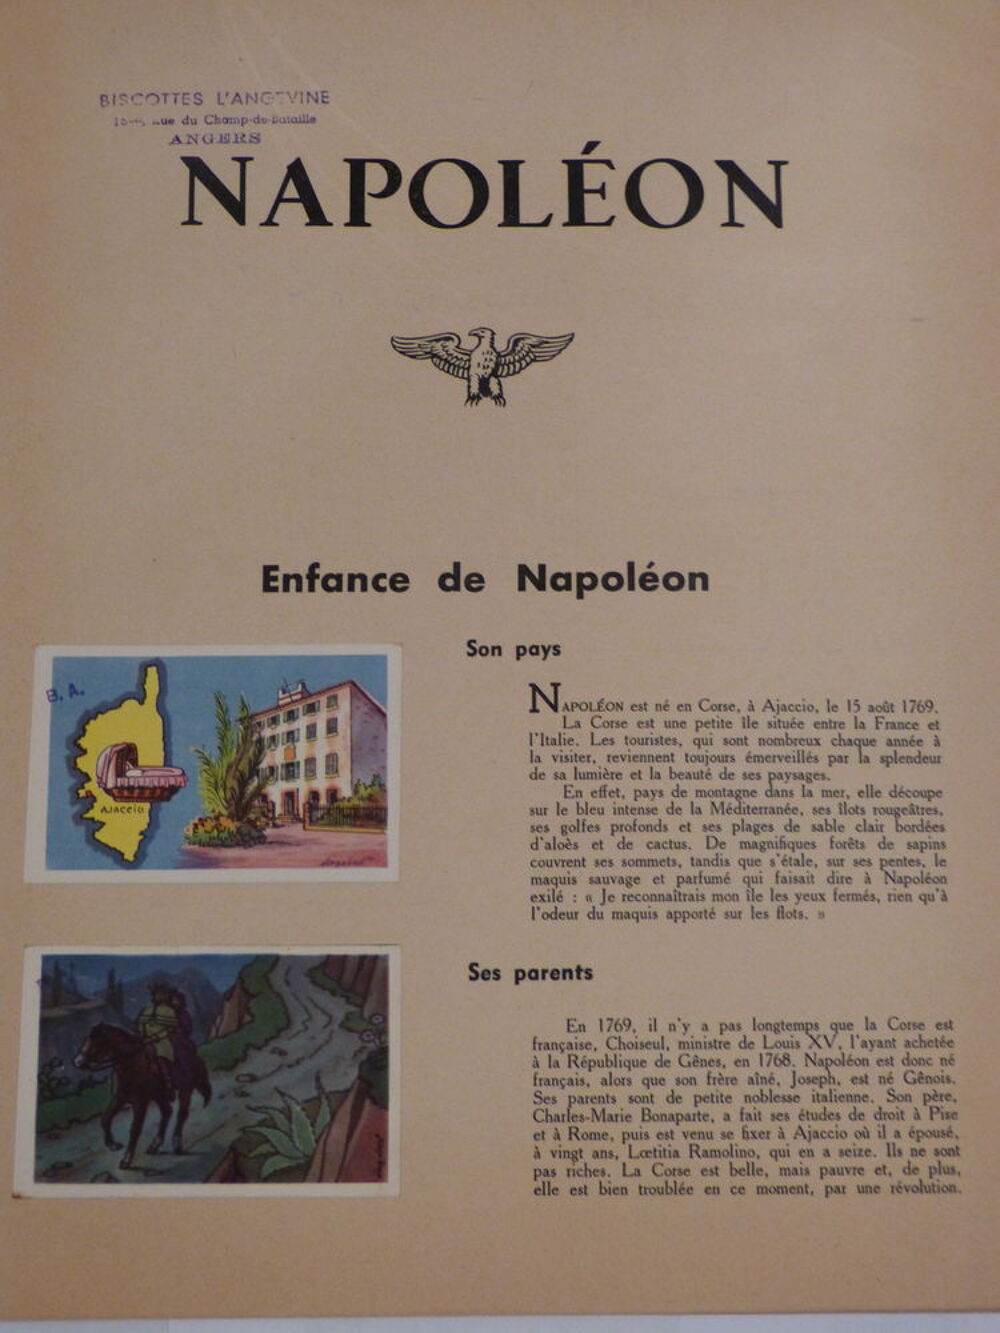 HISTOIRE DE NAPOLEON livre d'images biscottes l'angevine Livres et BD